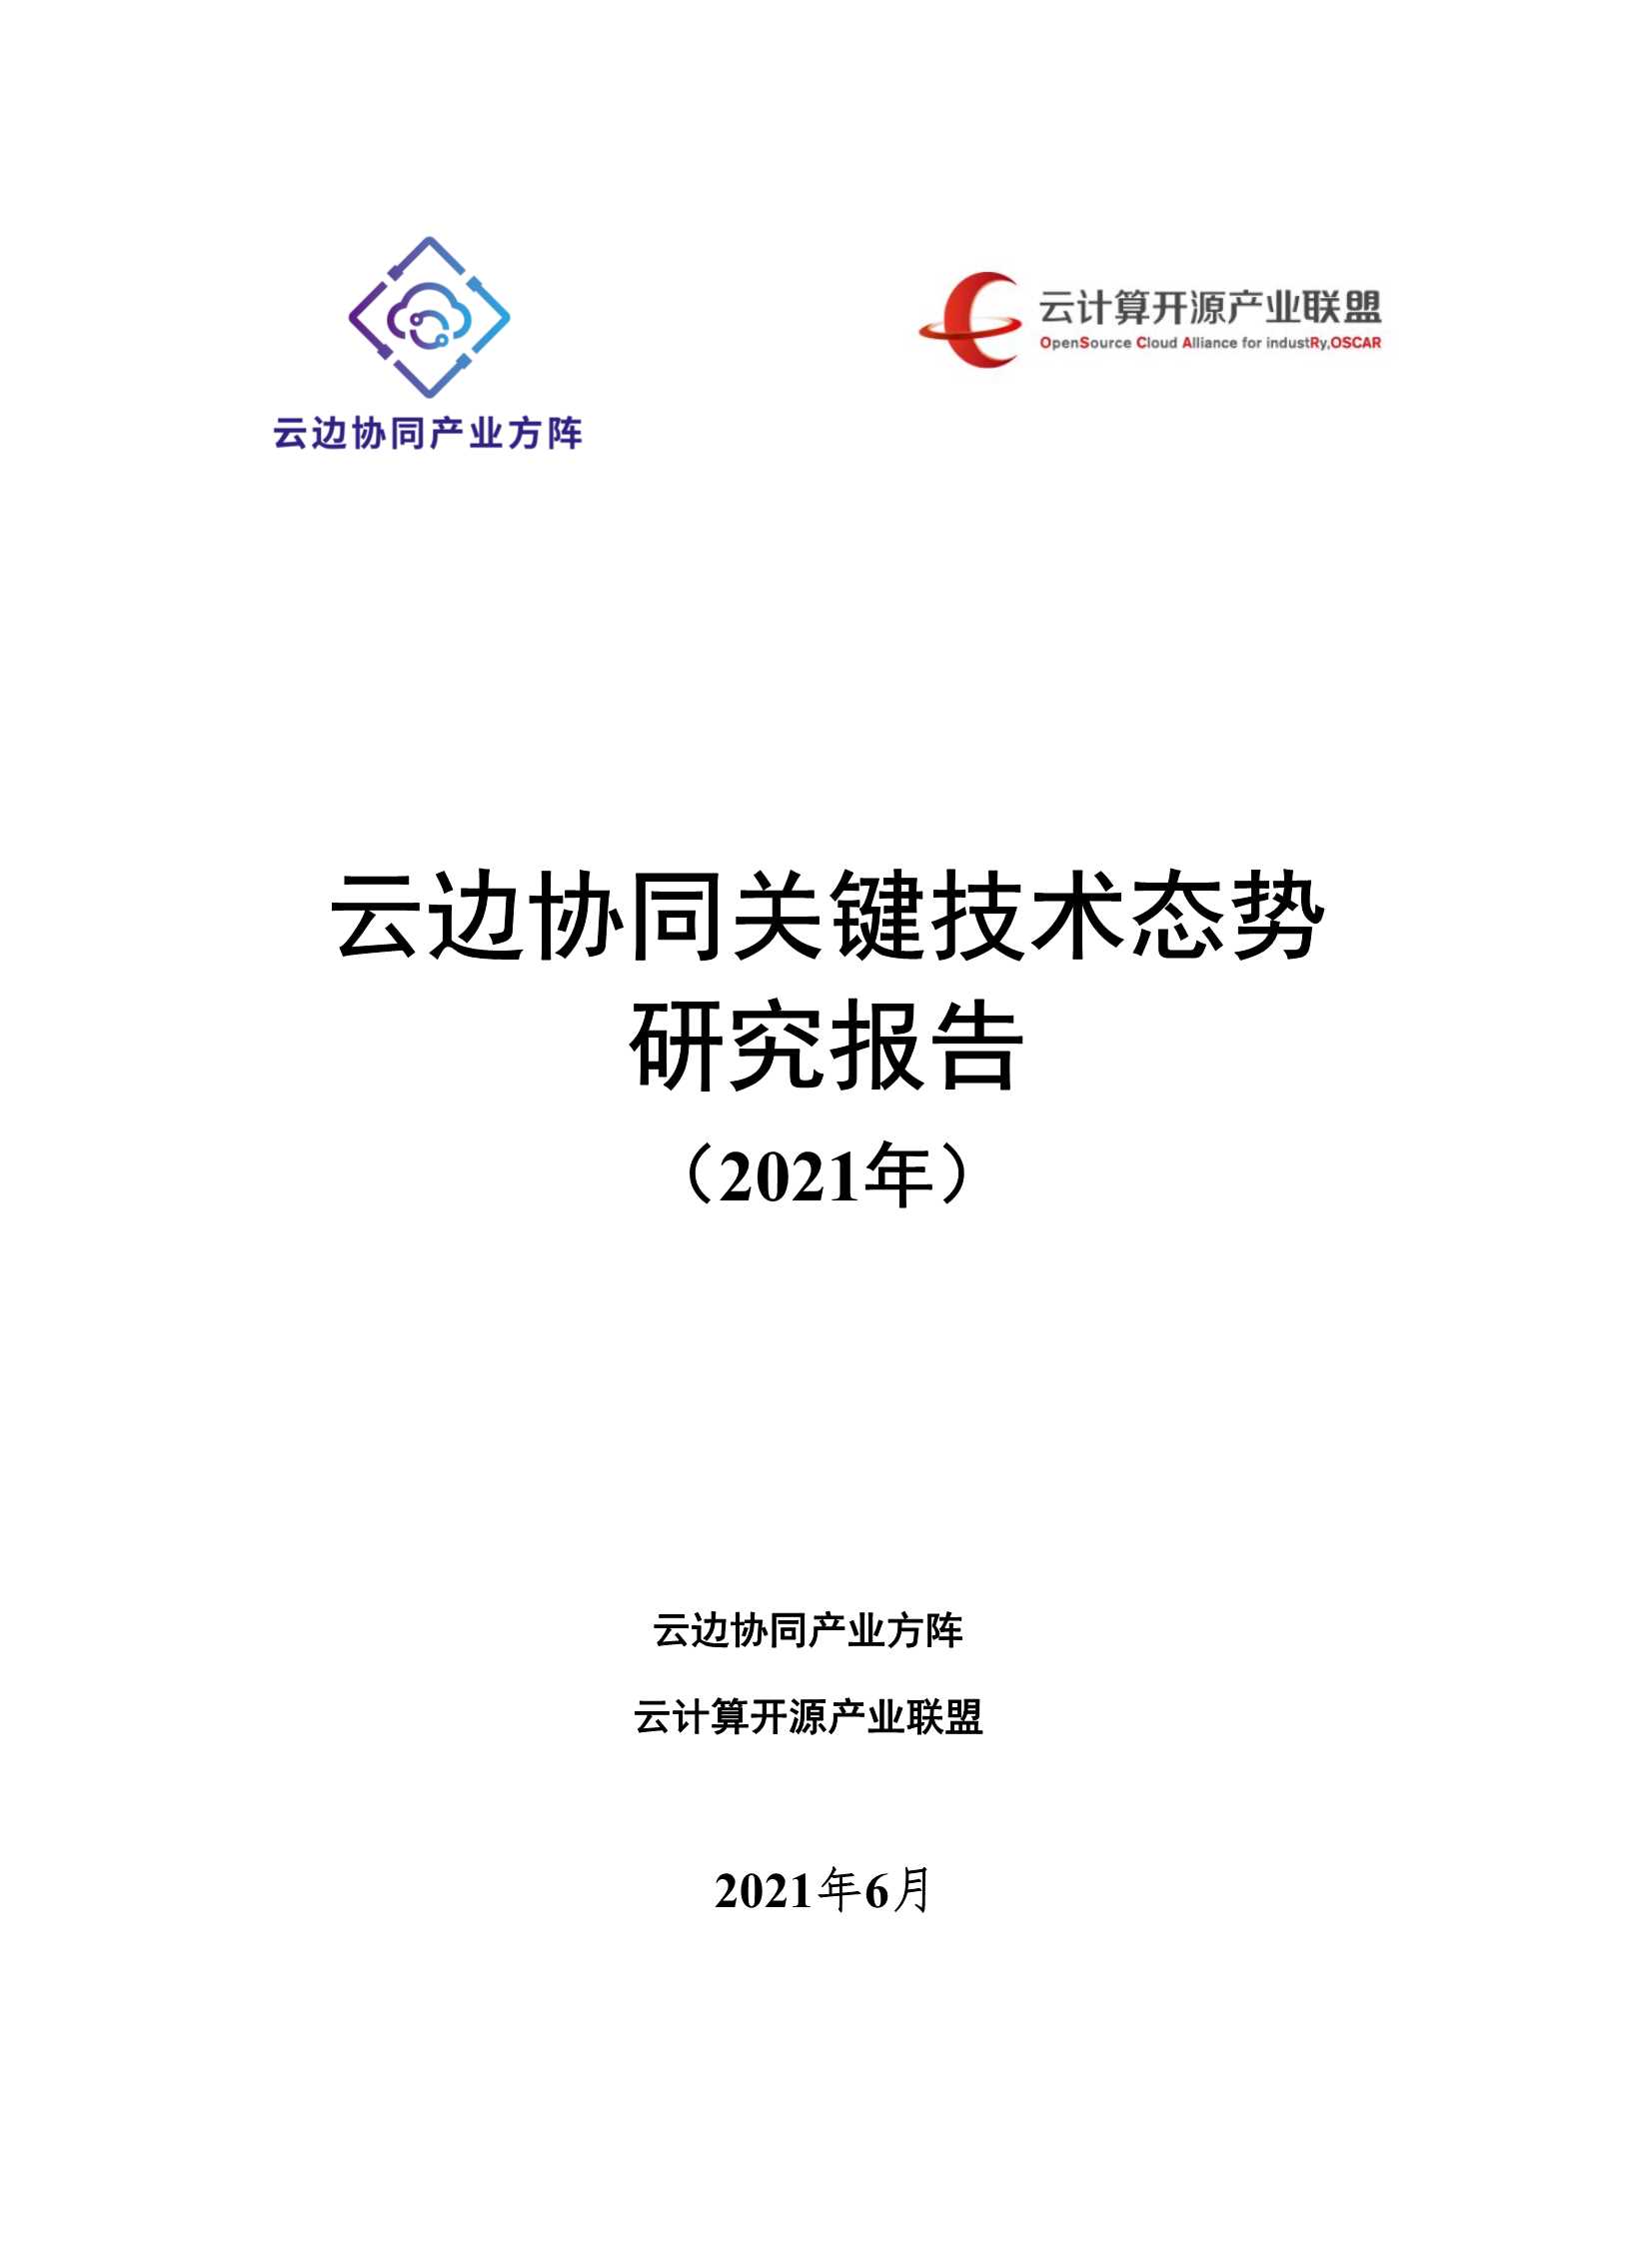 OSCAR-云边协同关键技术态势研究报告-2021.06-32页